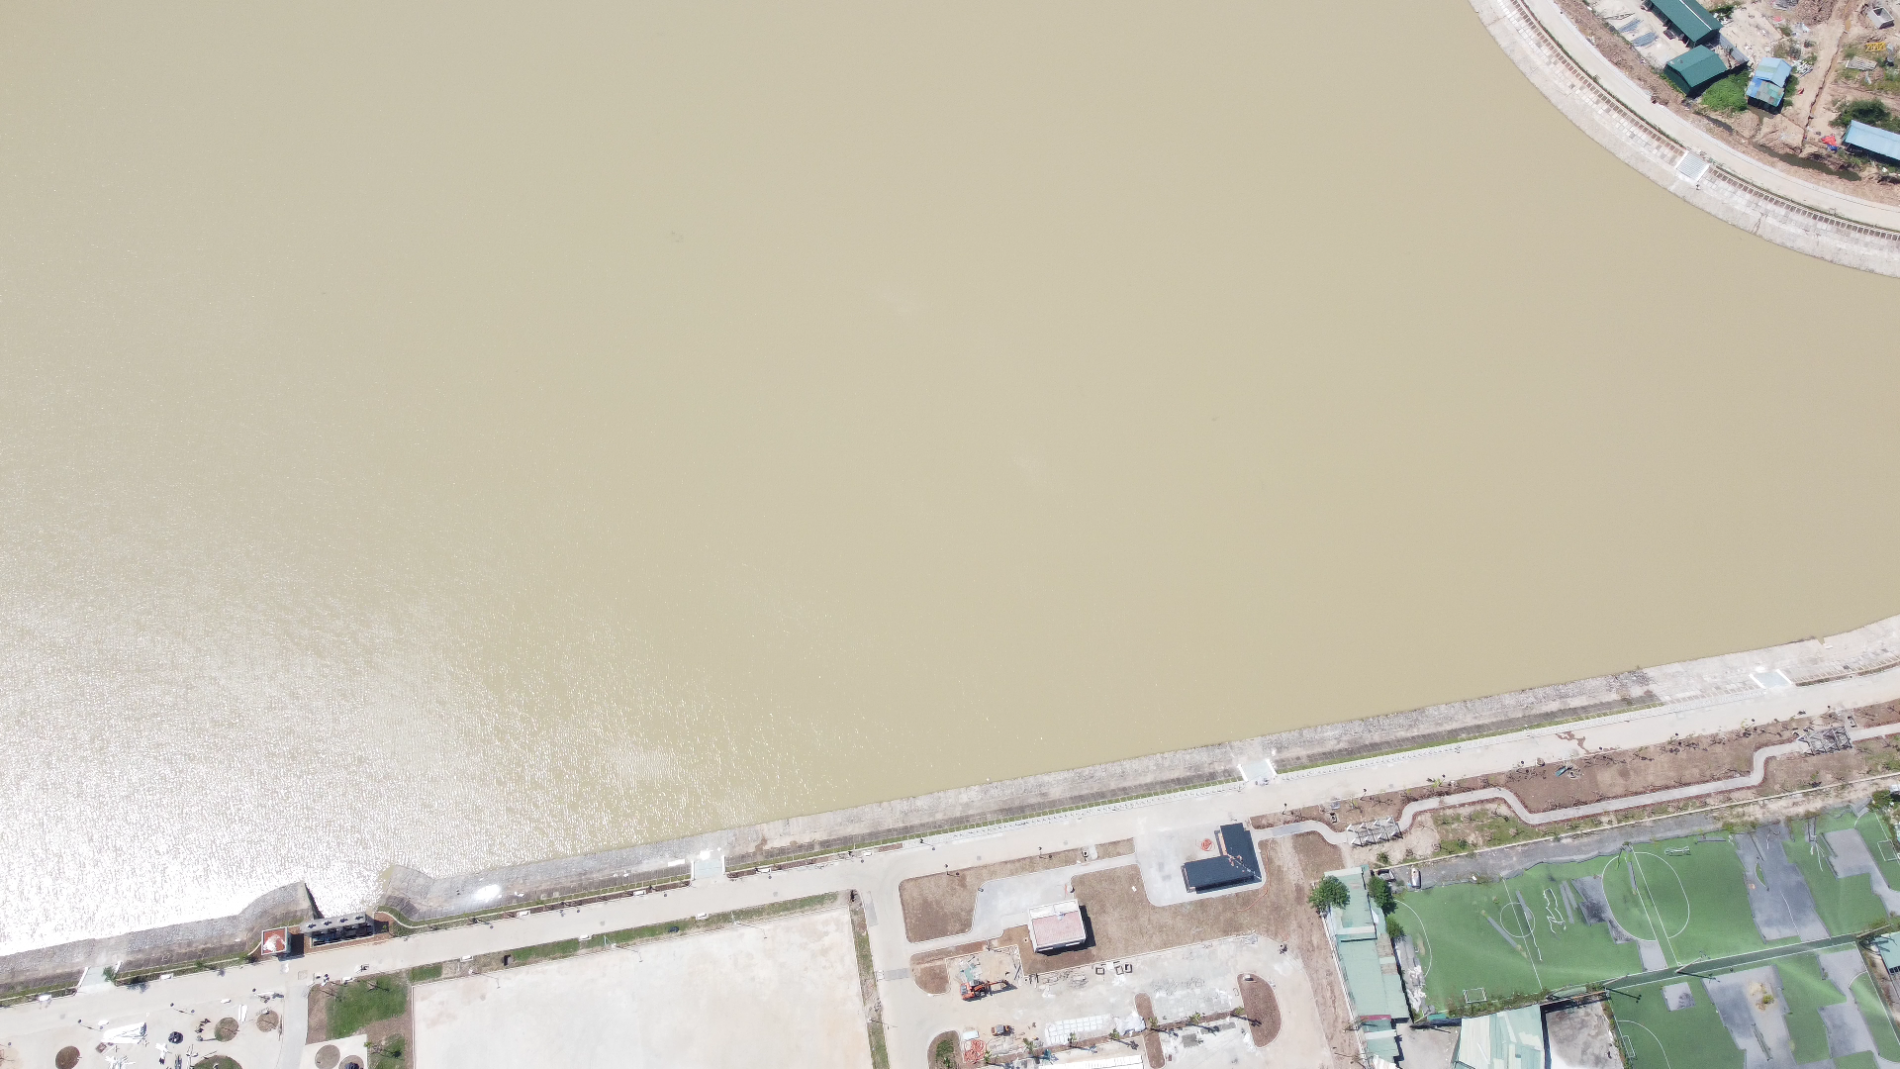 Hình ảnh cung thiếu nhi nghìn tỷ đang xây dựng ở Công viên hồ điều hòa CV1 Cầu Giấy